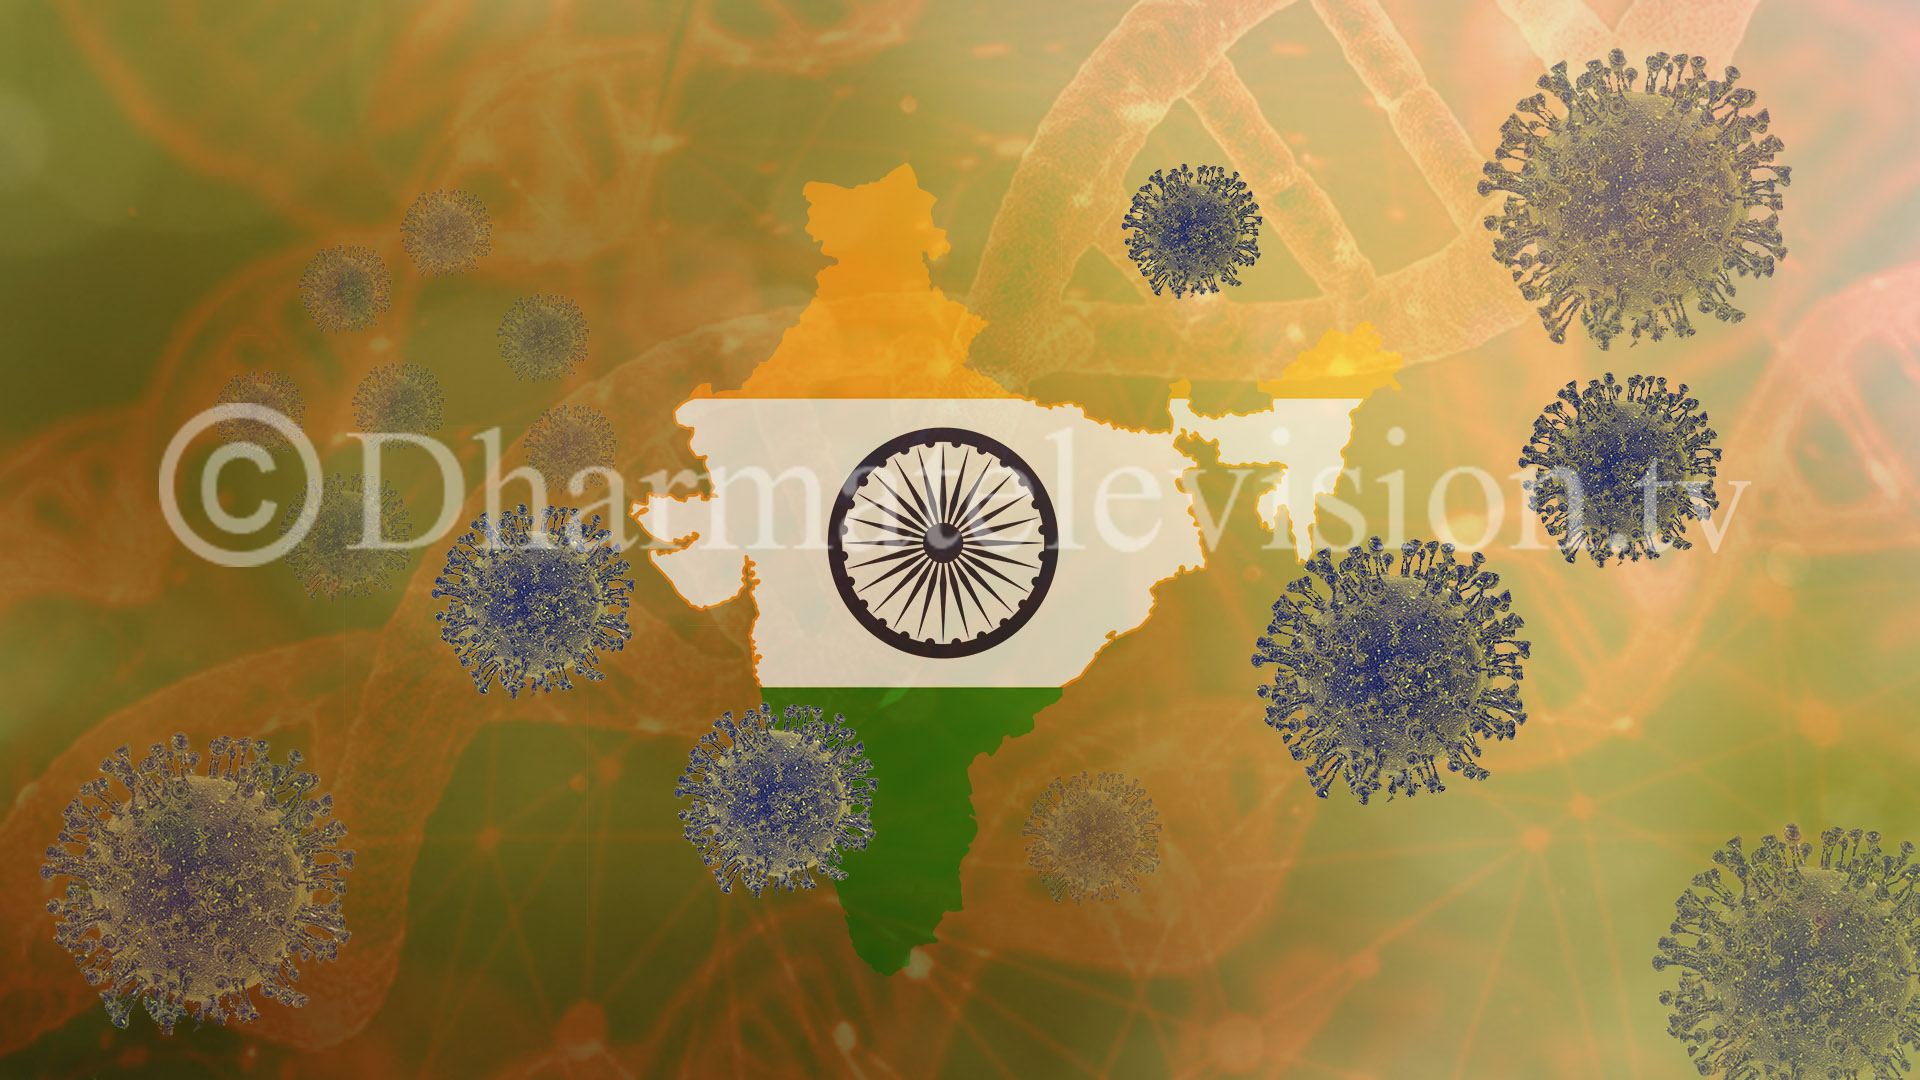 भारतमा पछिल्लो २४ घण्टामा ४८ हजार ४४६ जनामा कोरोना संक्रमण